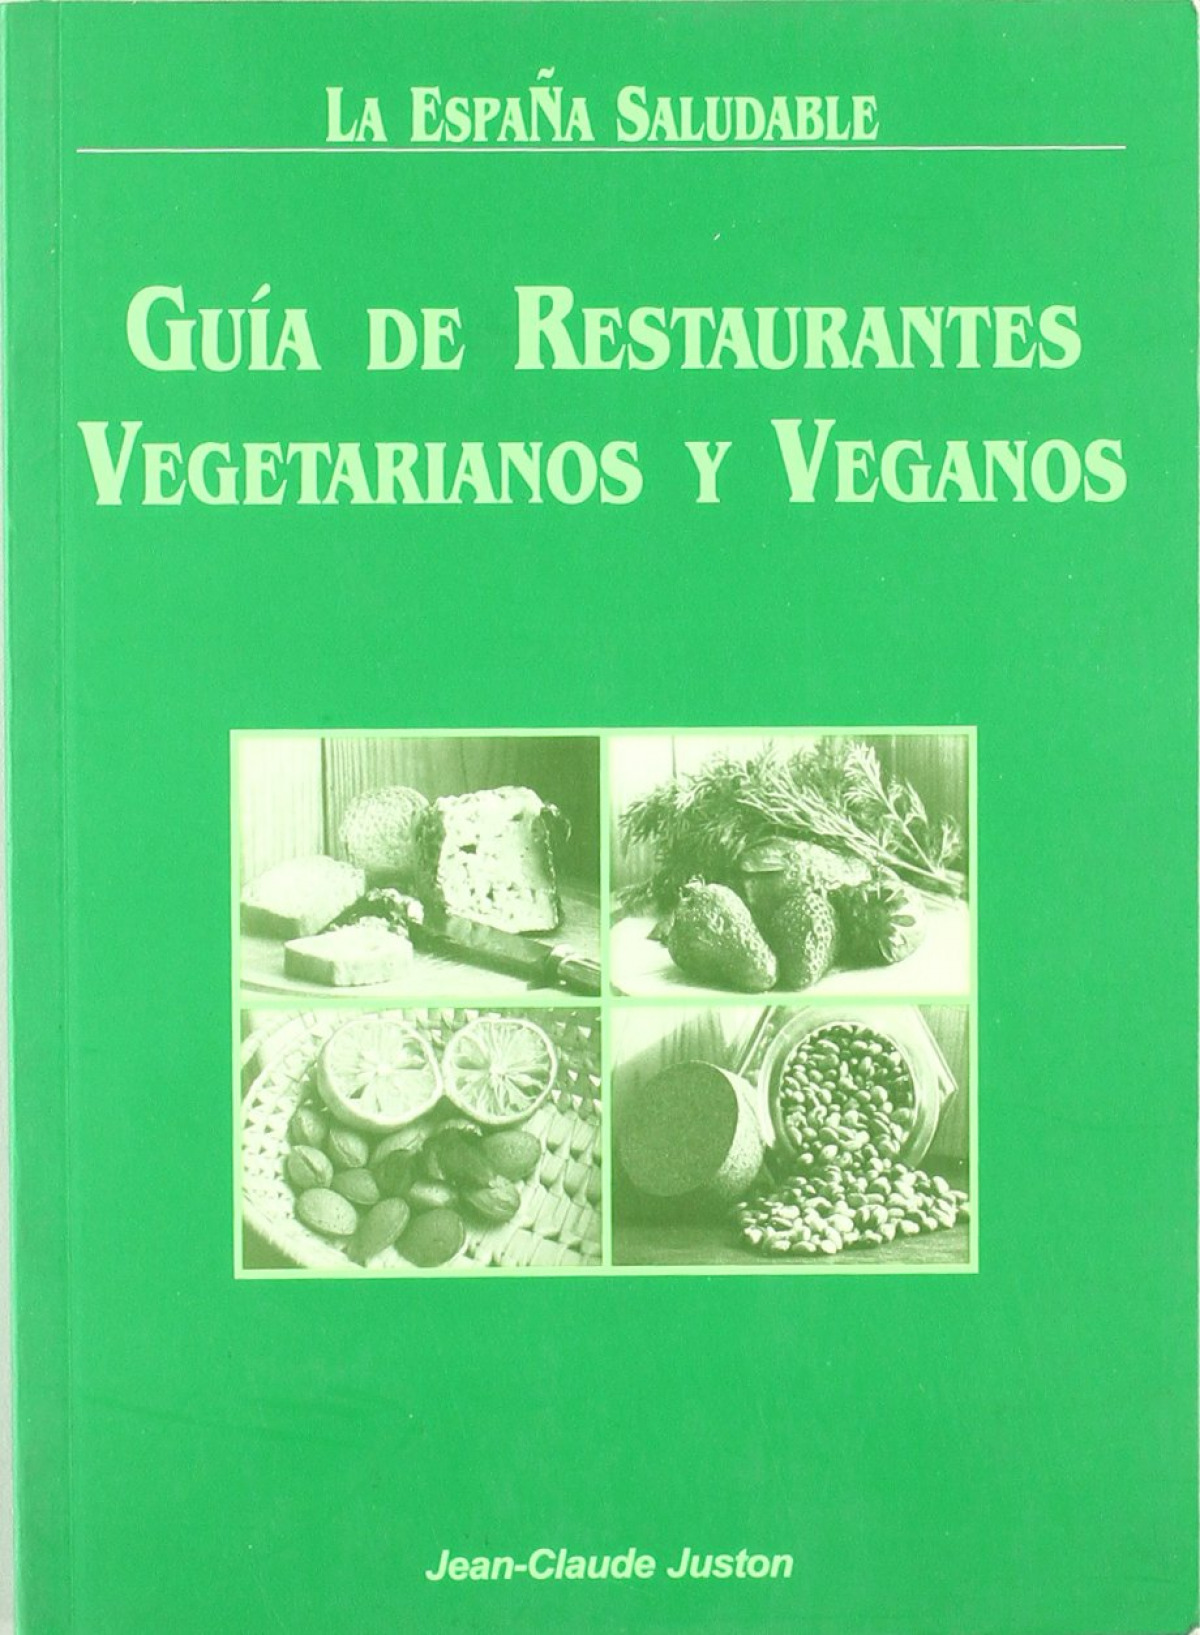 Guia de restaurantes vegetarianos y veganos - Juston, Jean-Claude